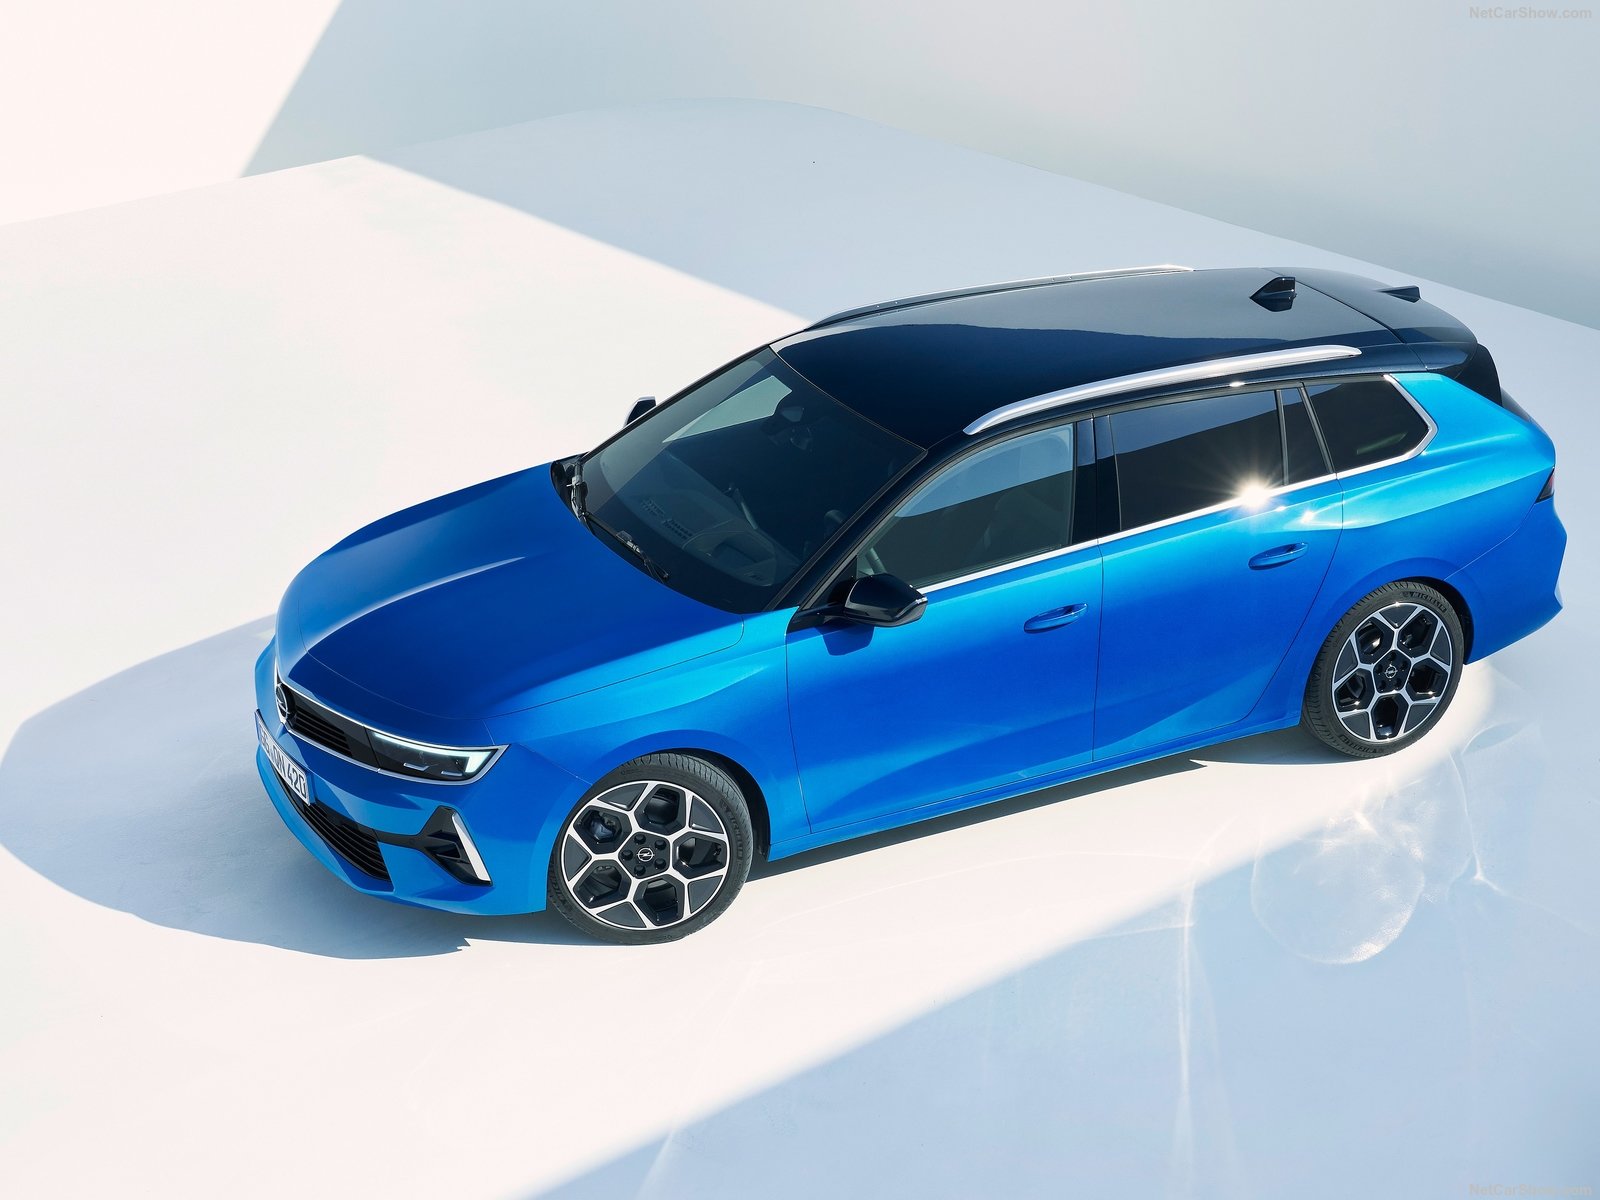 Νέο Opel Astra Sports Tourer: Το station wagon που εξηλεκτρίστηκε